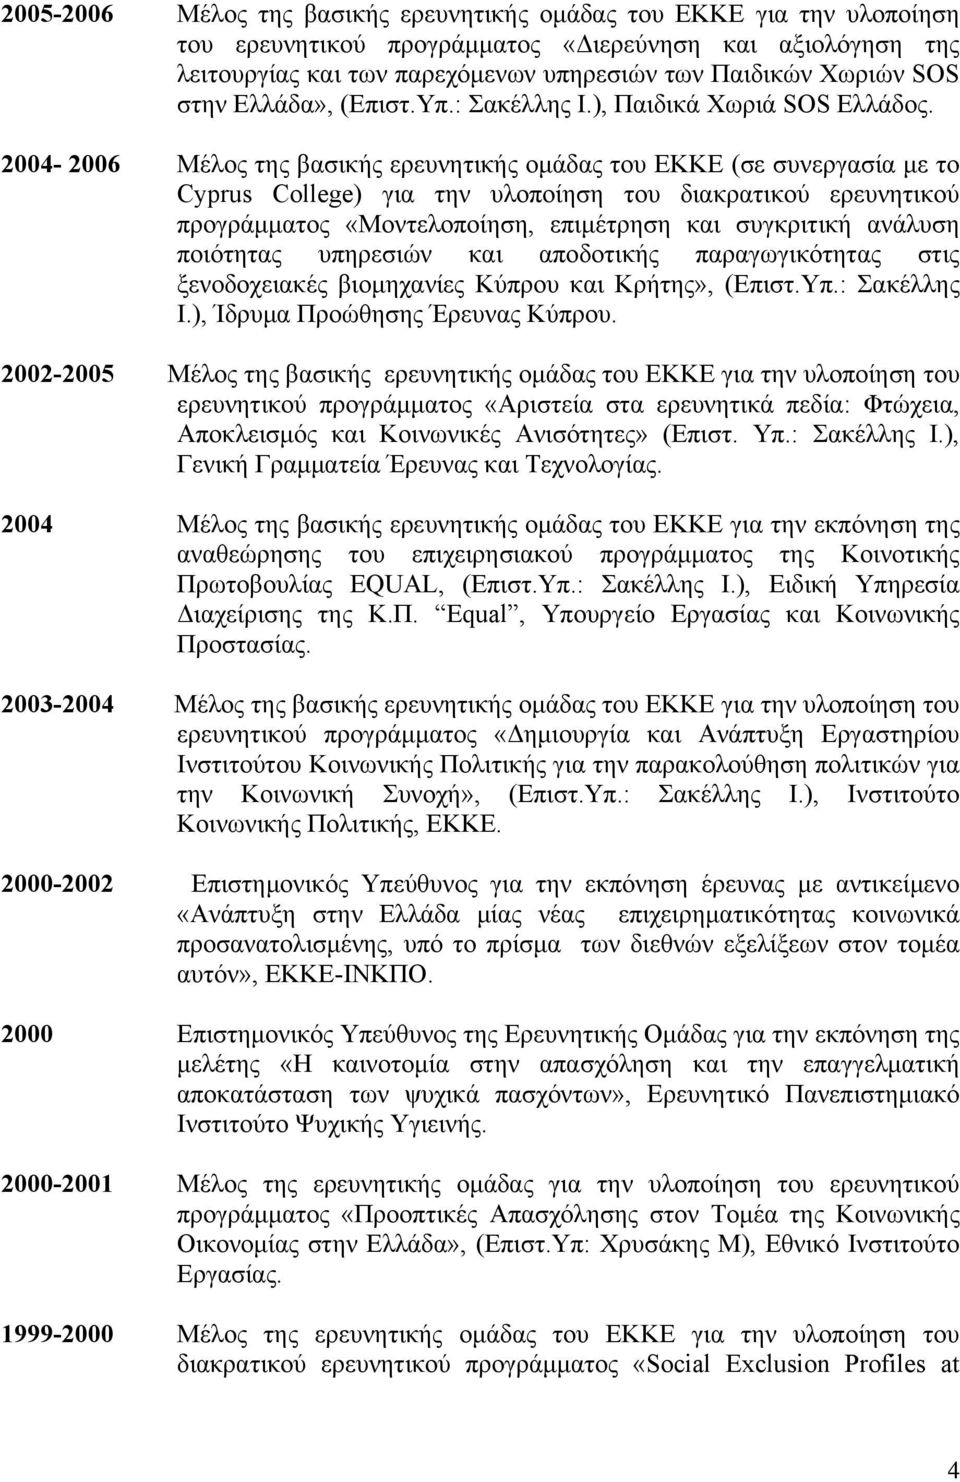 2004-2006 Μέλος της βασικής ερευνητικής ομάδας του ΕΚΚΕ (σε συνεργασία με το Cyprus College) για την υλοποίηση του διακρατικού ερευνητικού προγράμματος «Μοντελοποίηση, επιμέτρηση και συγκριτική